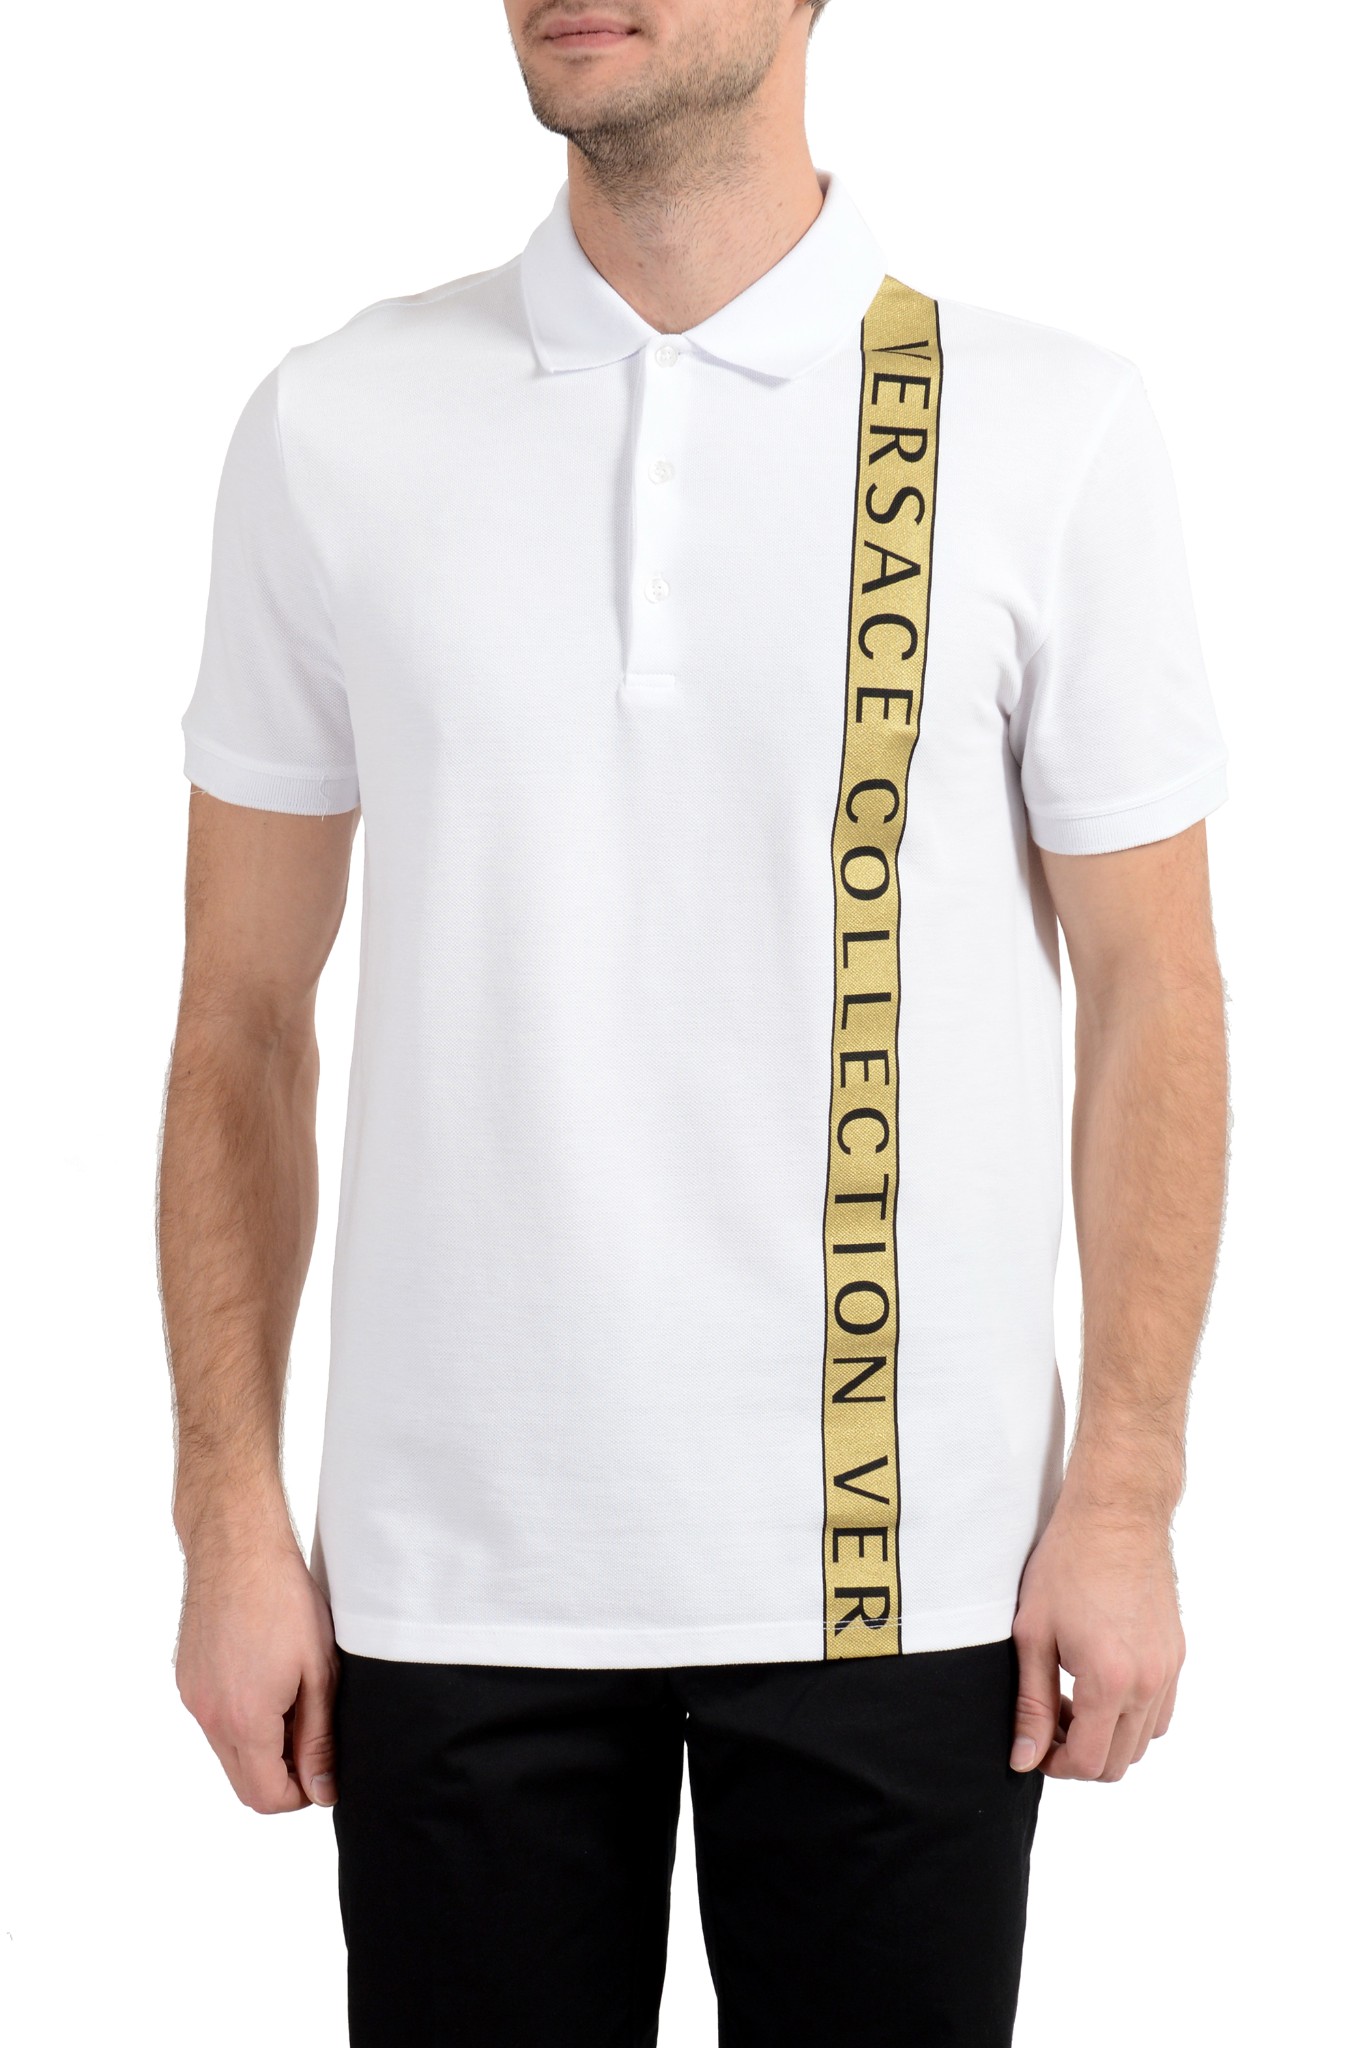 versace men's short sleeve shirt